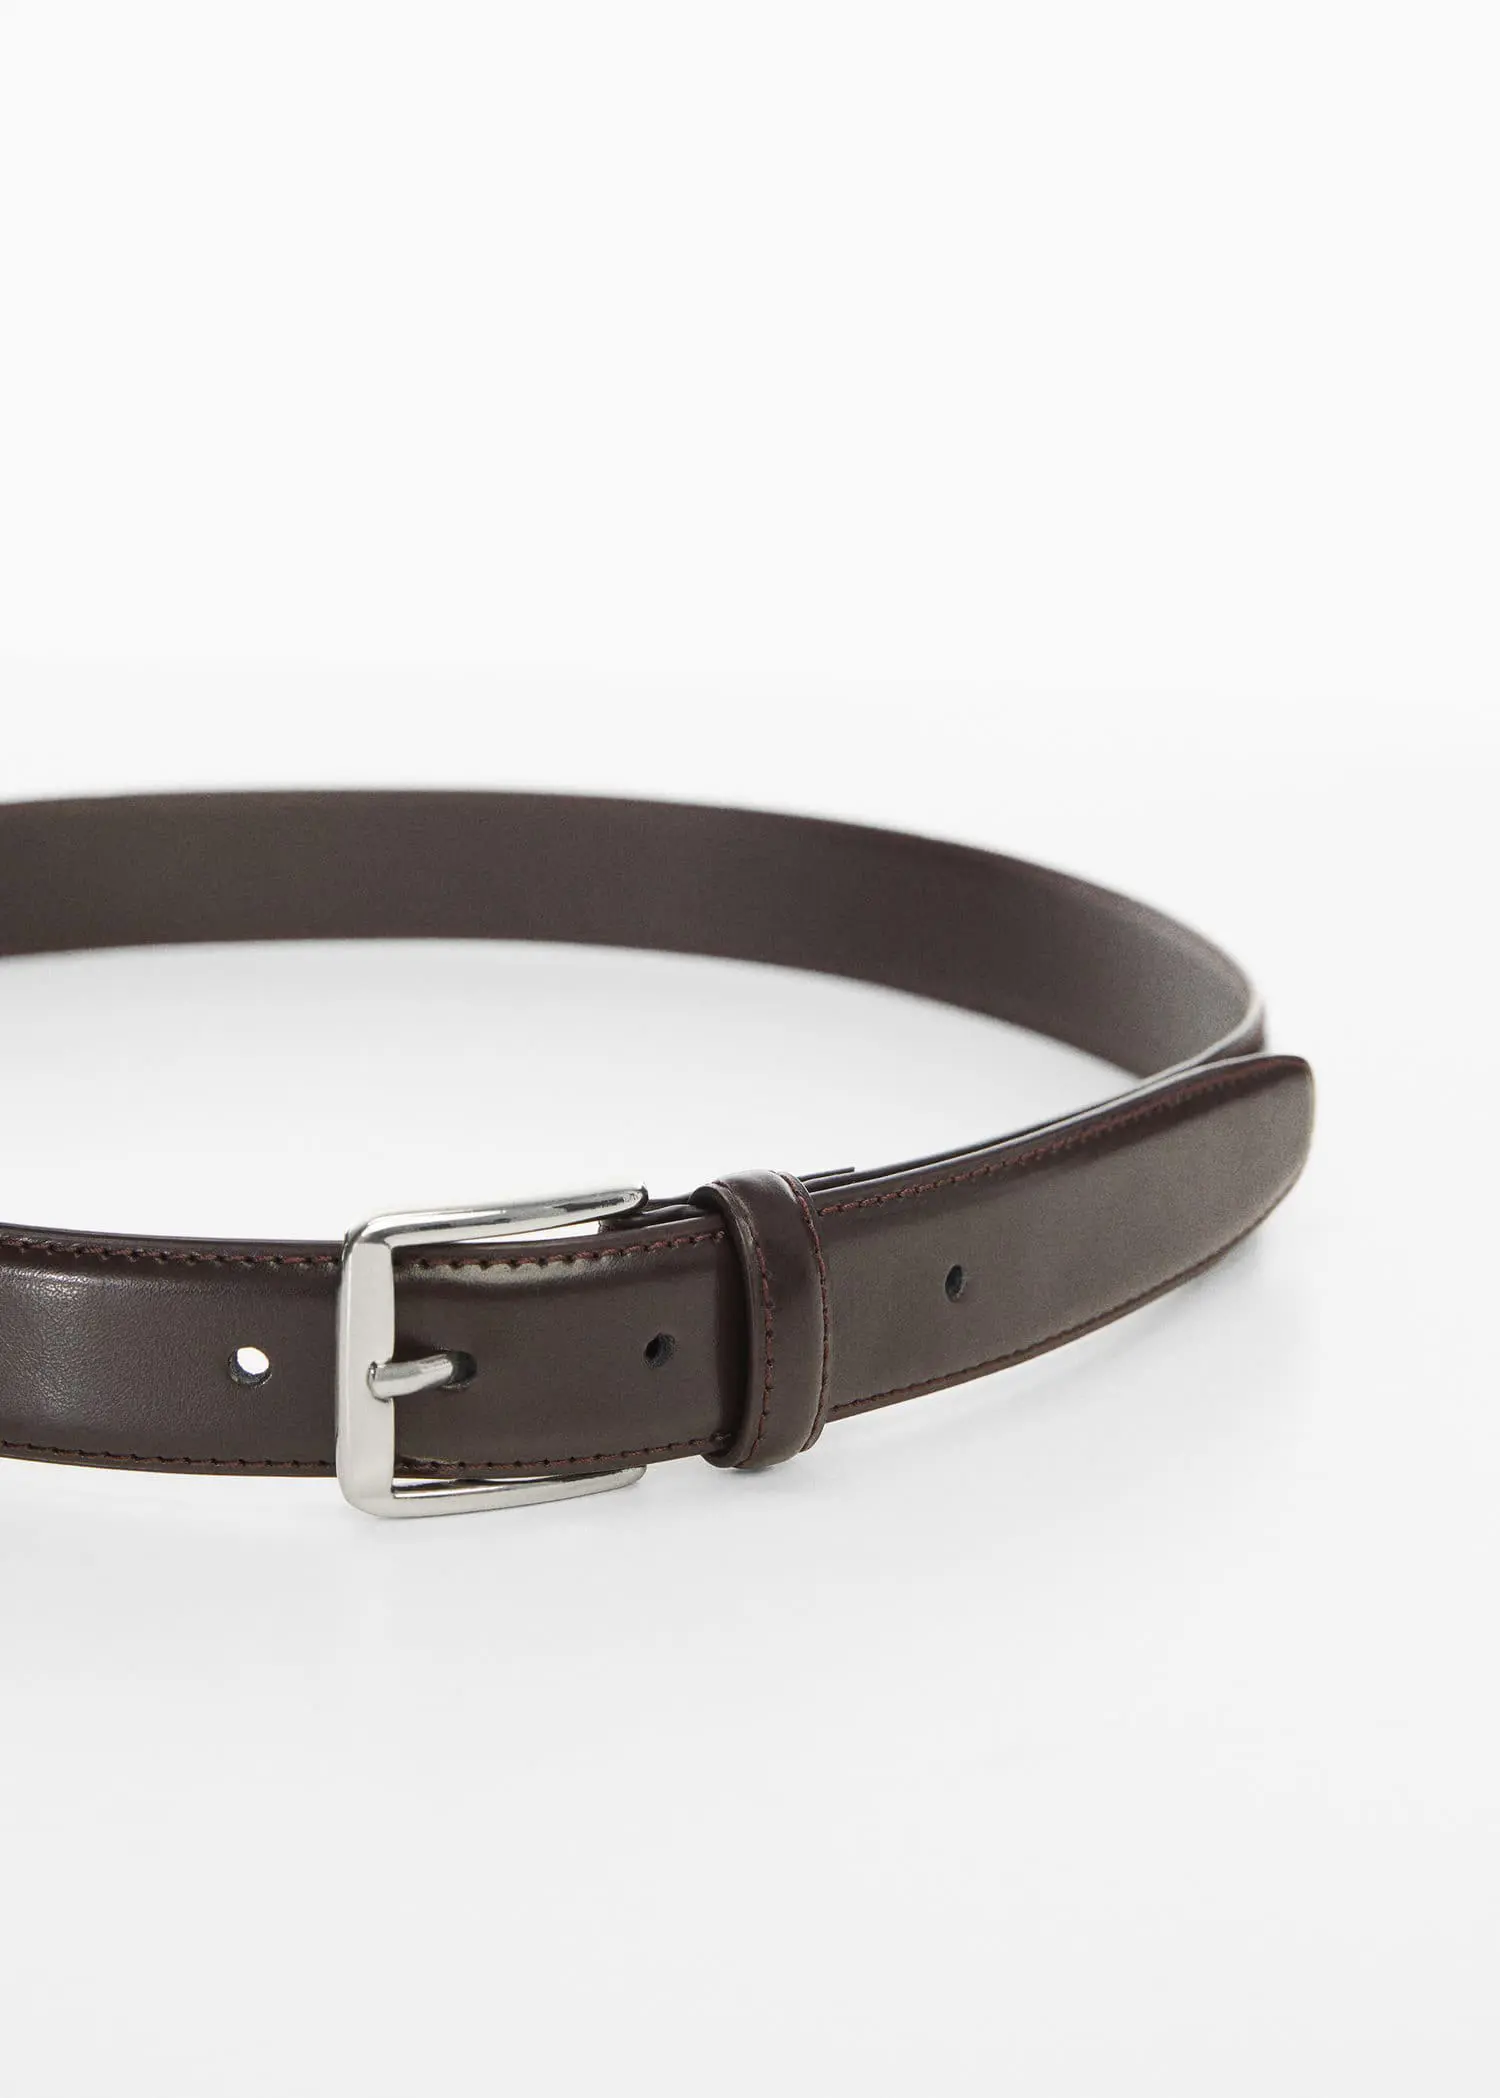 Mango Leather belt. 2